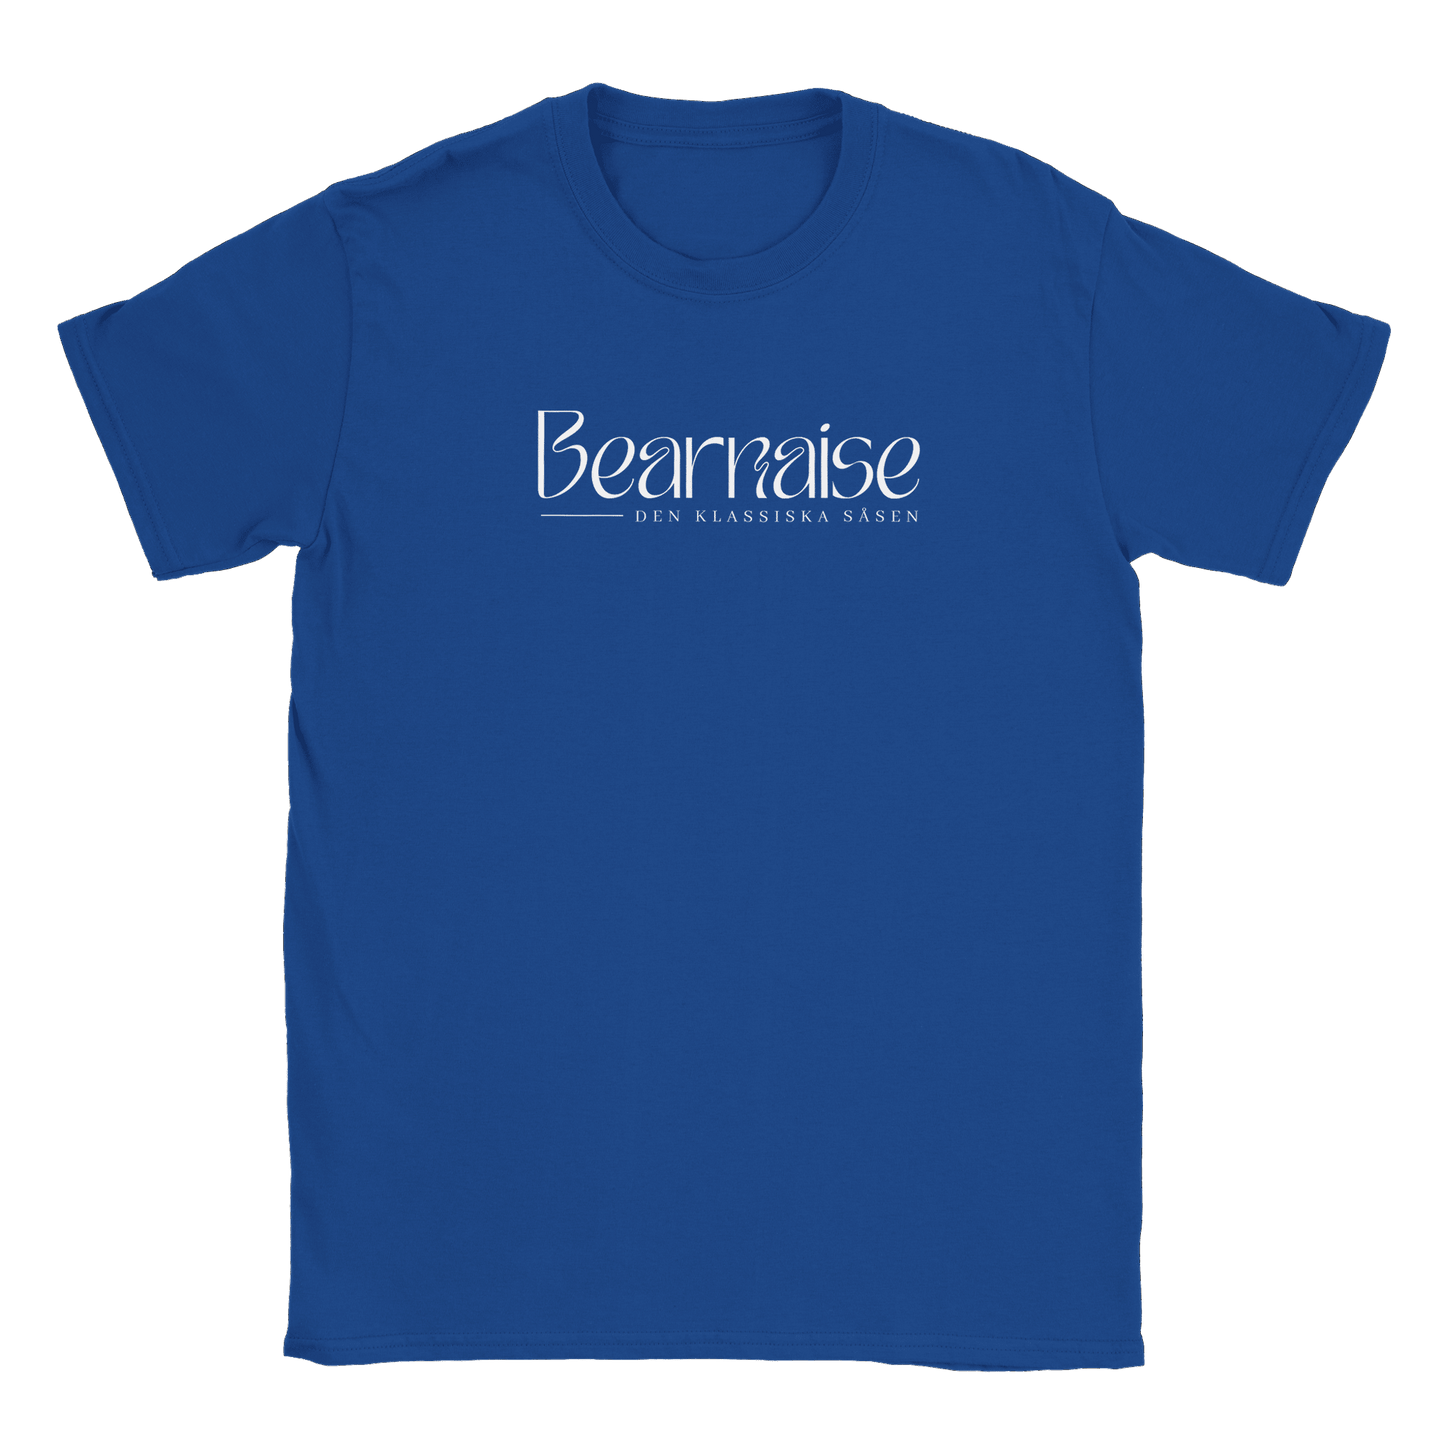 Bearnaisesås - T-shirt Royal